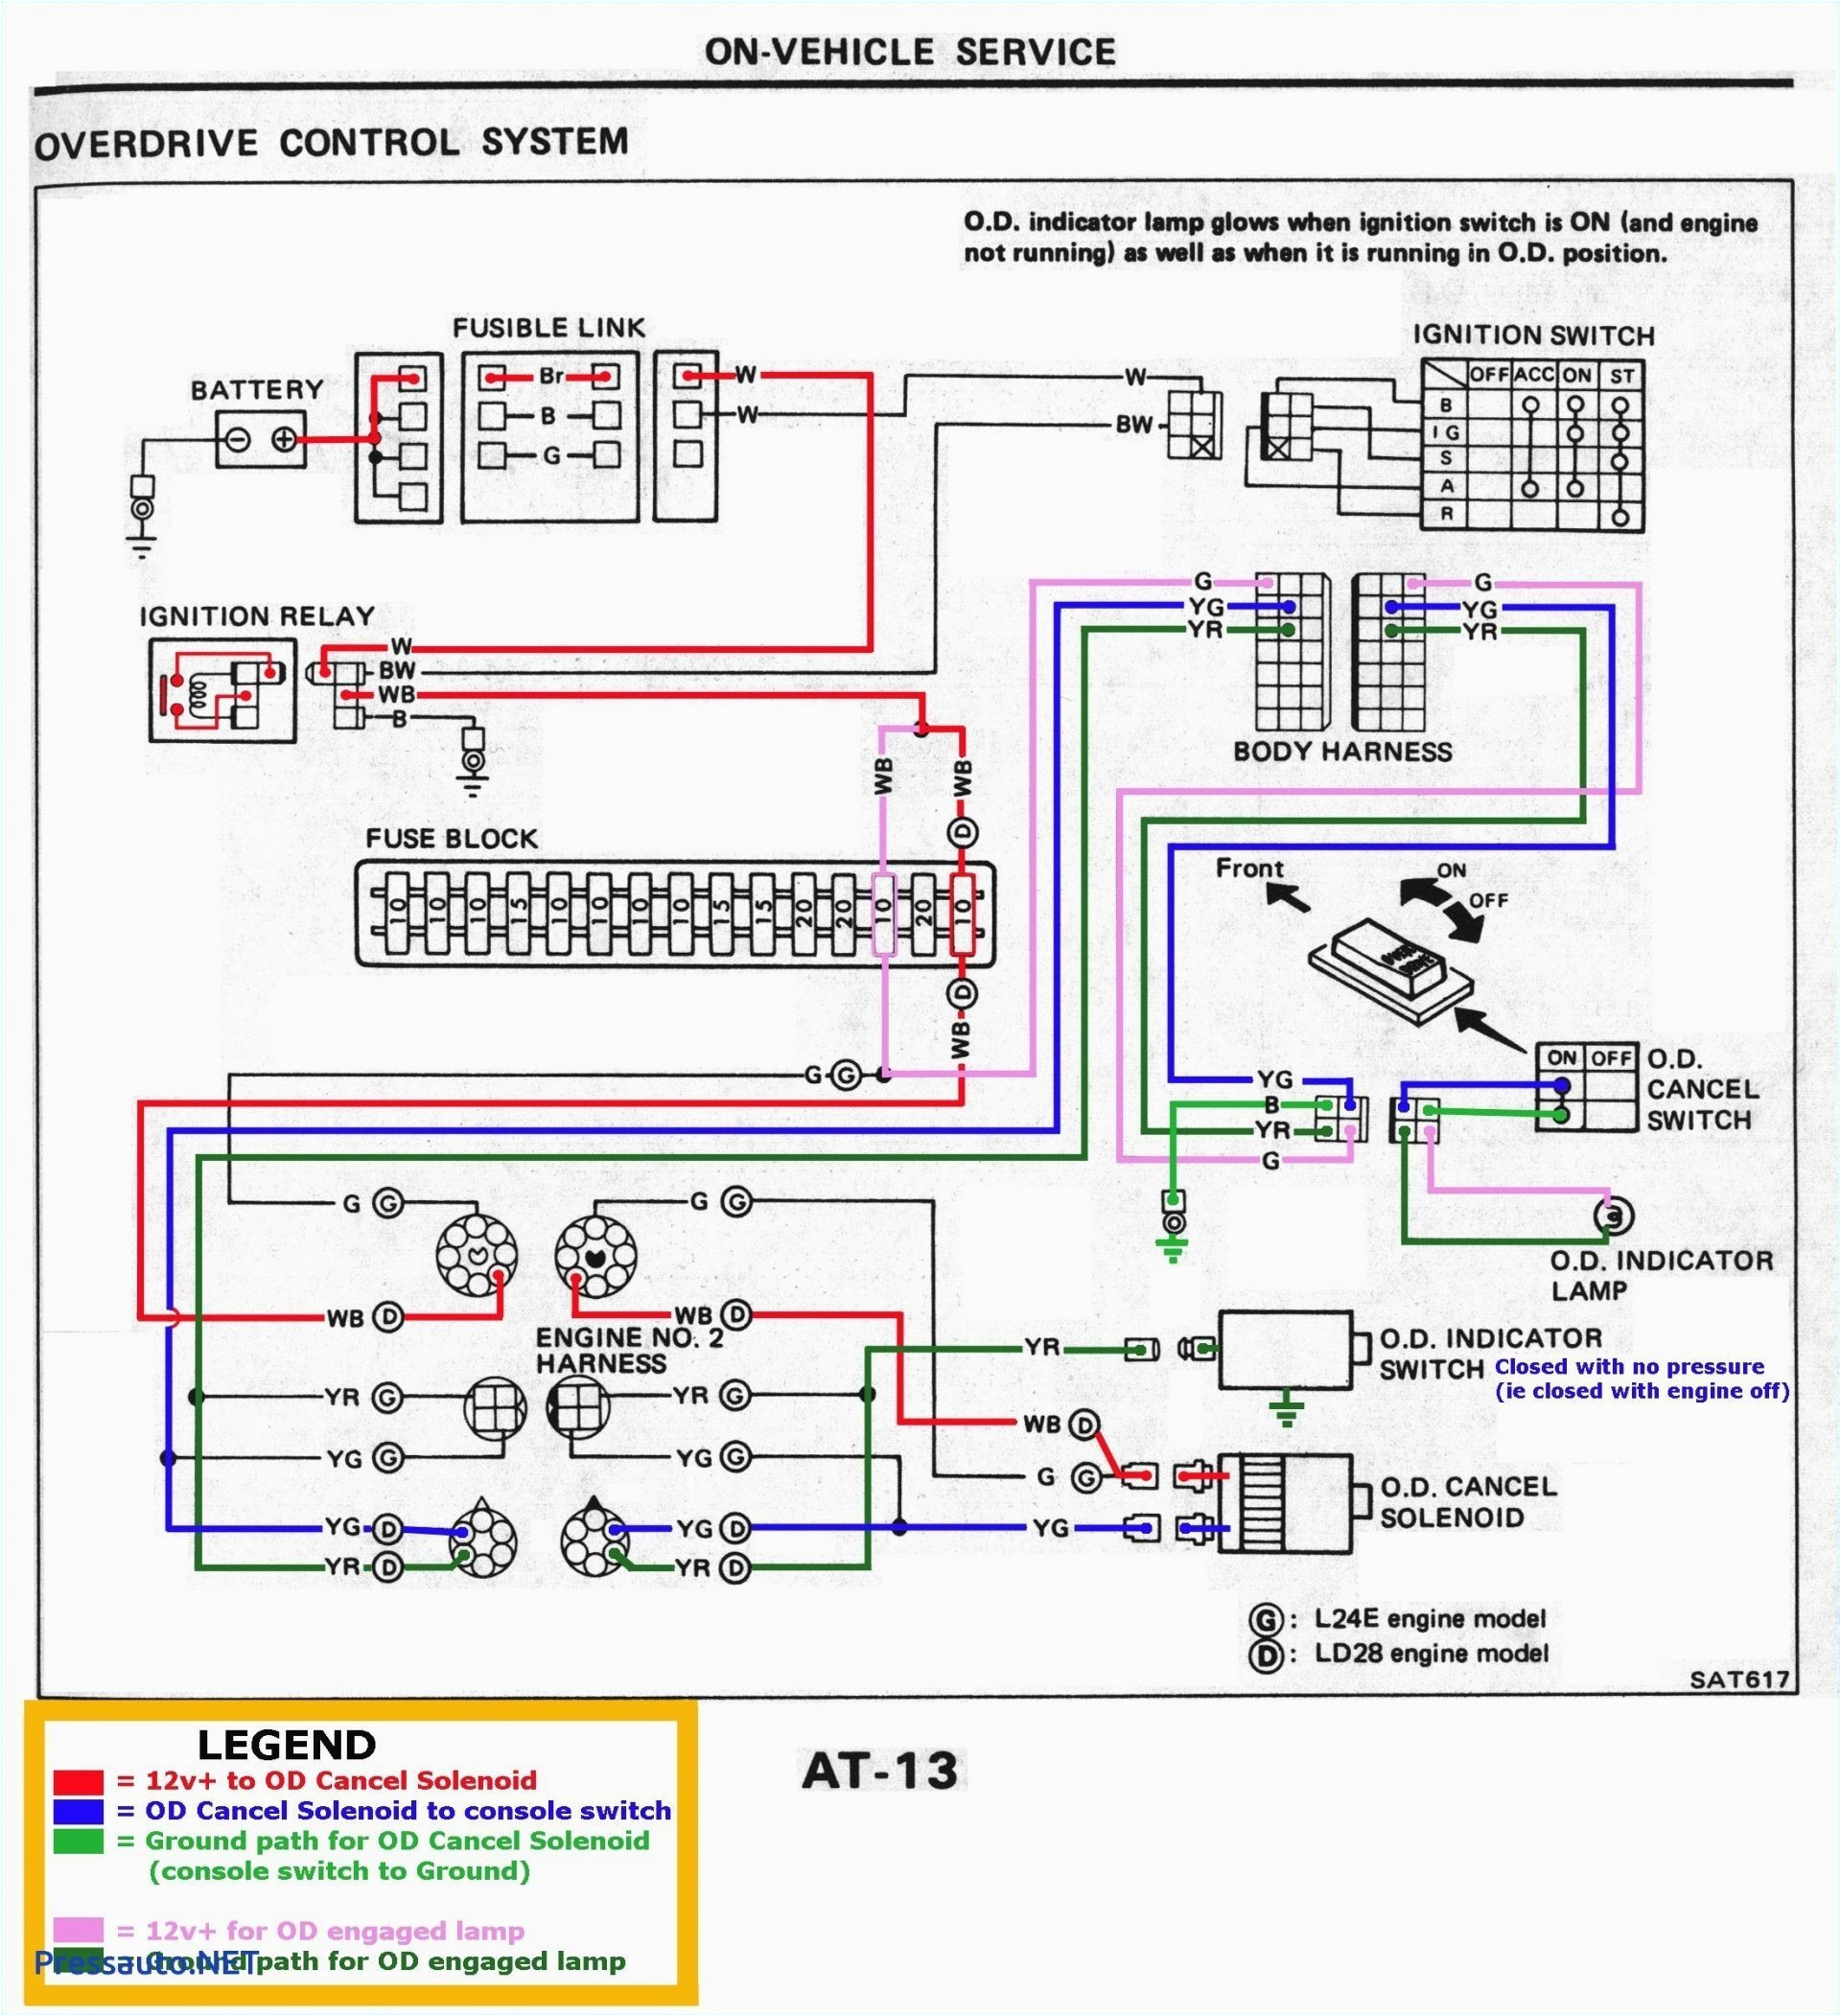 knock sensor location on 2014 dodge caravan wire harness diagrams 2001 chevy silverado knock sensor wiring diagram free download